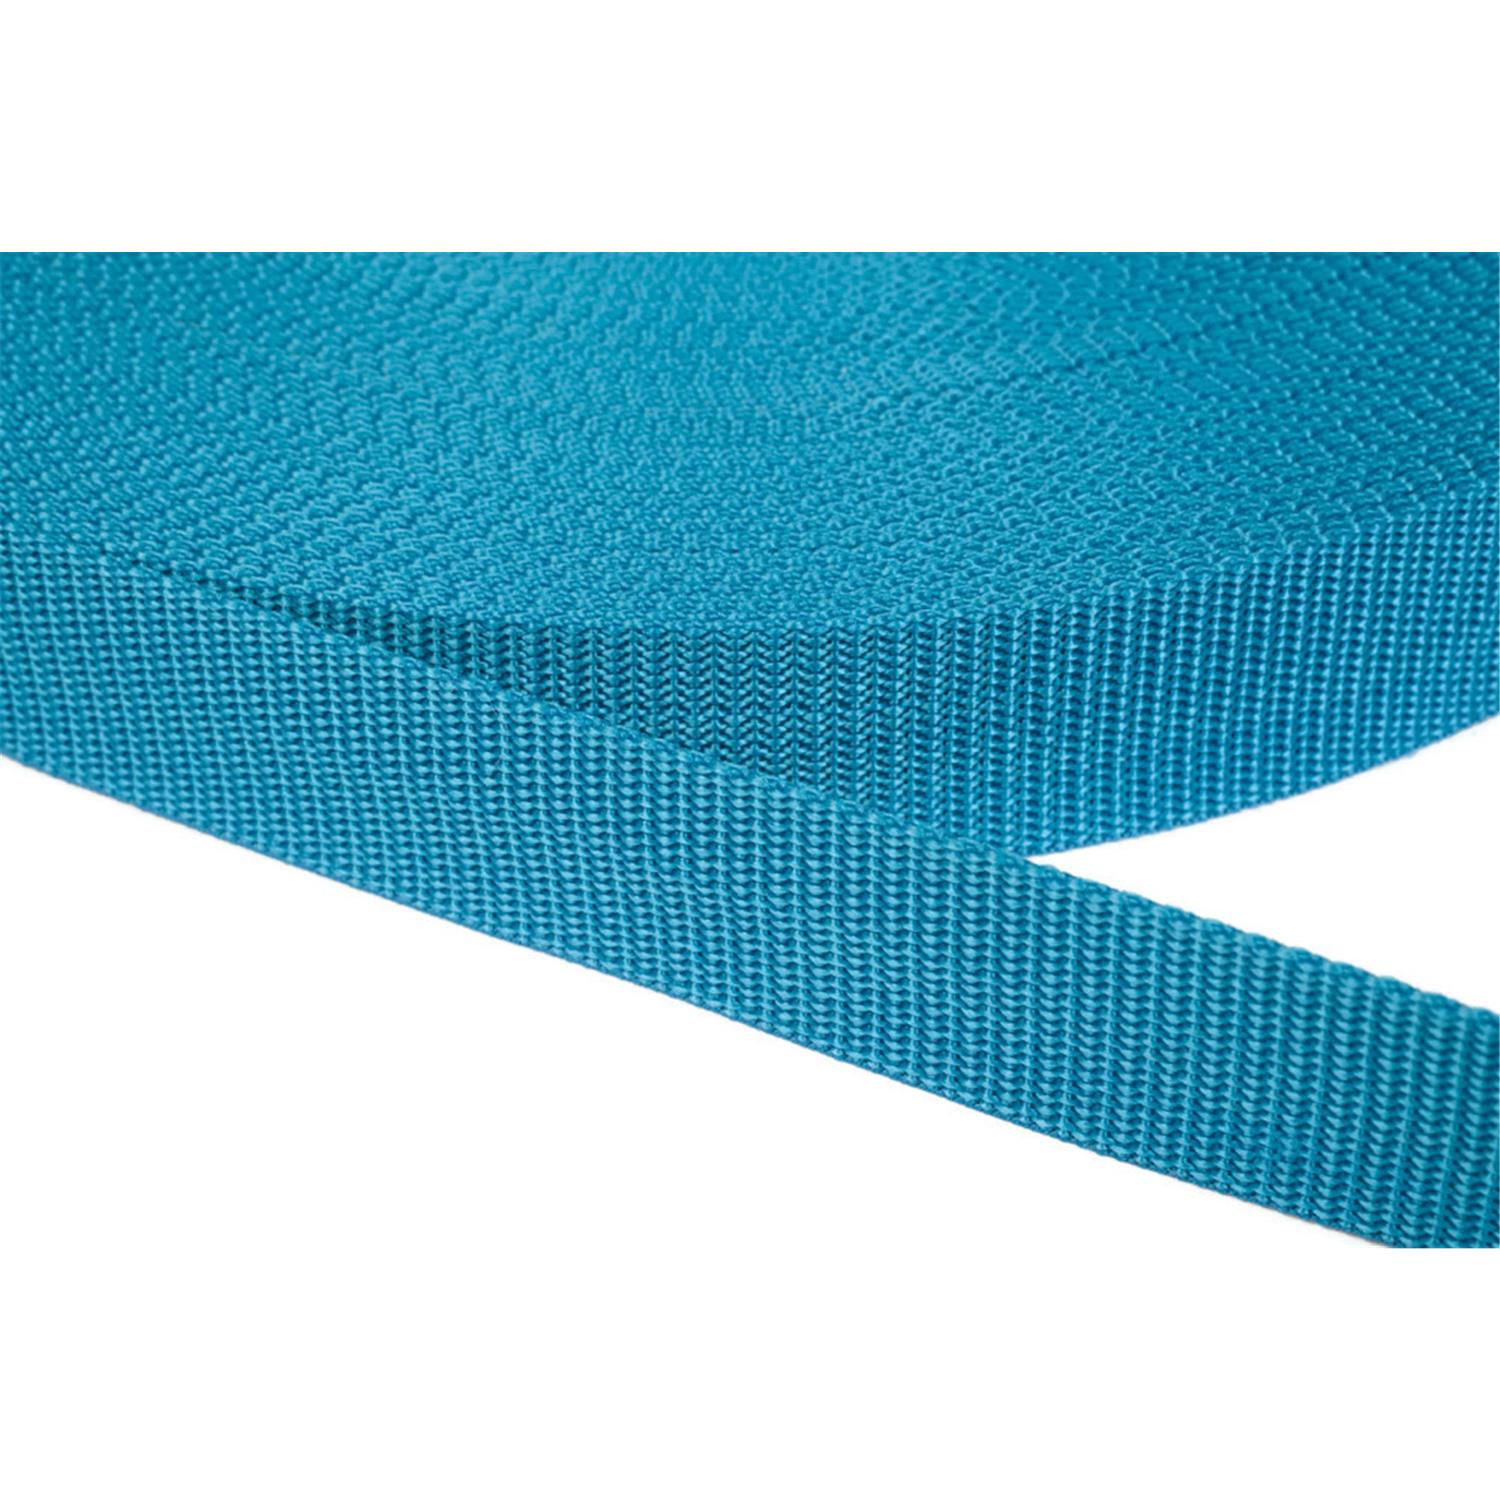 Gurtband 25mm breit aus Polypropylen in 41 Farben 29 - türkis 50 Meter